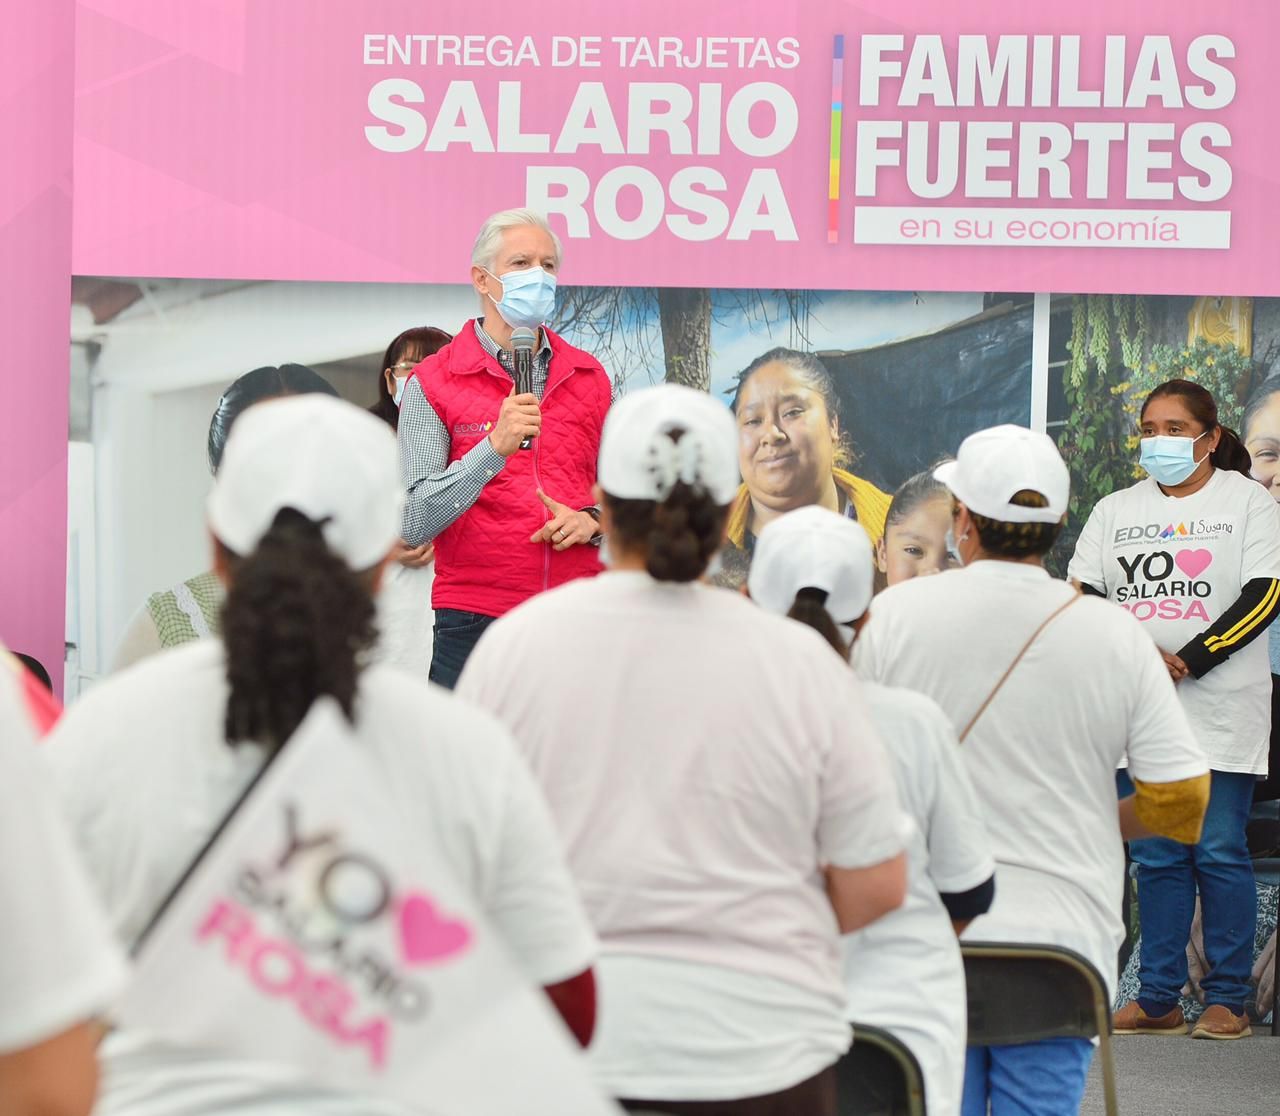 Sigue siendo el #Salario rosa un apoyo importante para las familias mexiquenses durante la pandemia: Alfredo del Mazo 